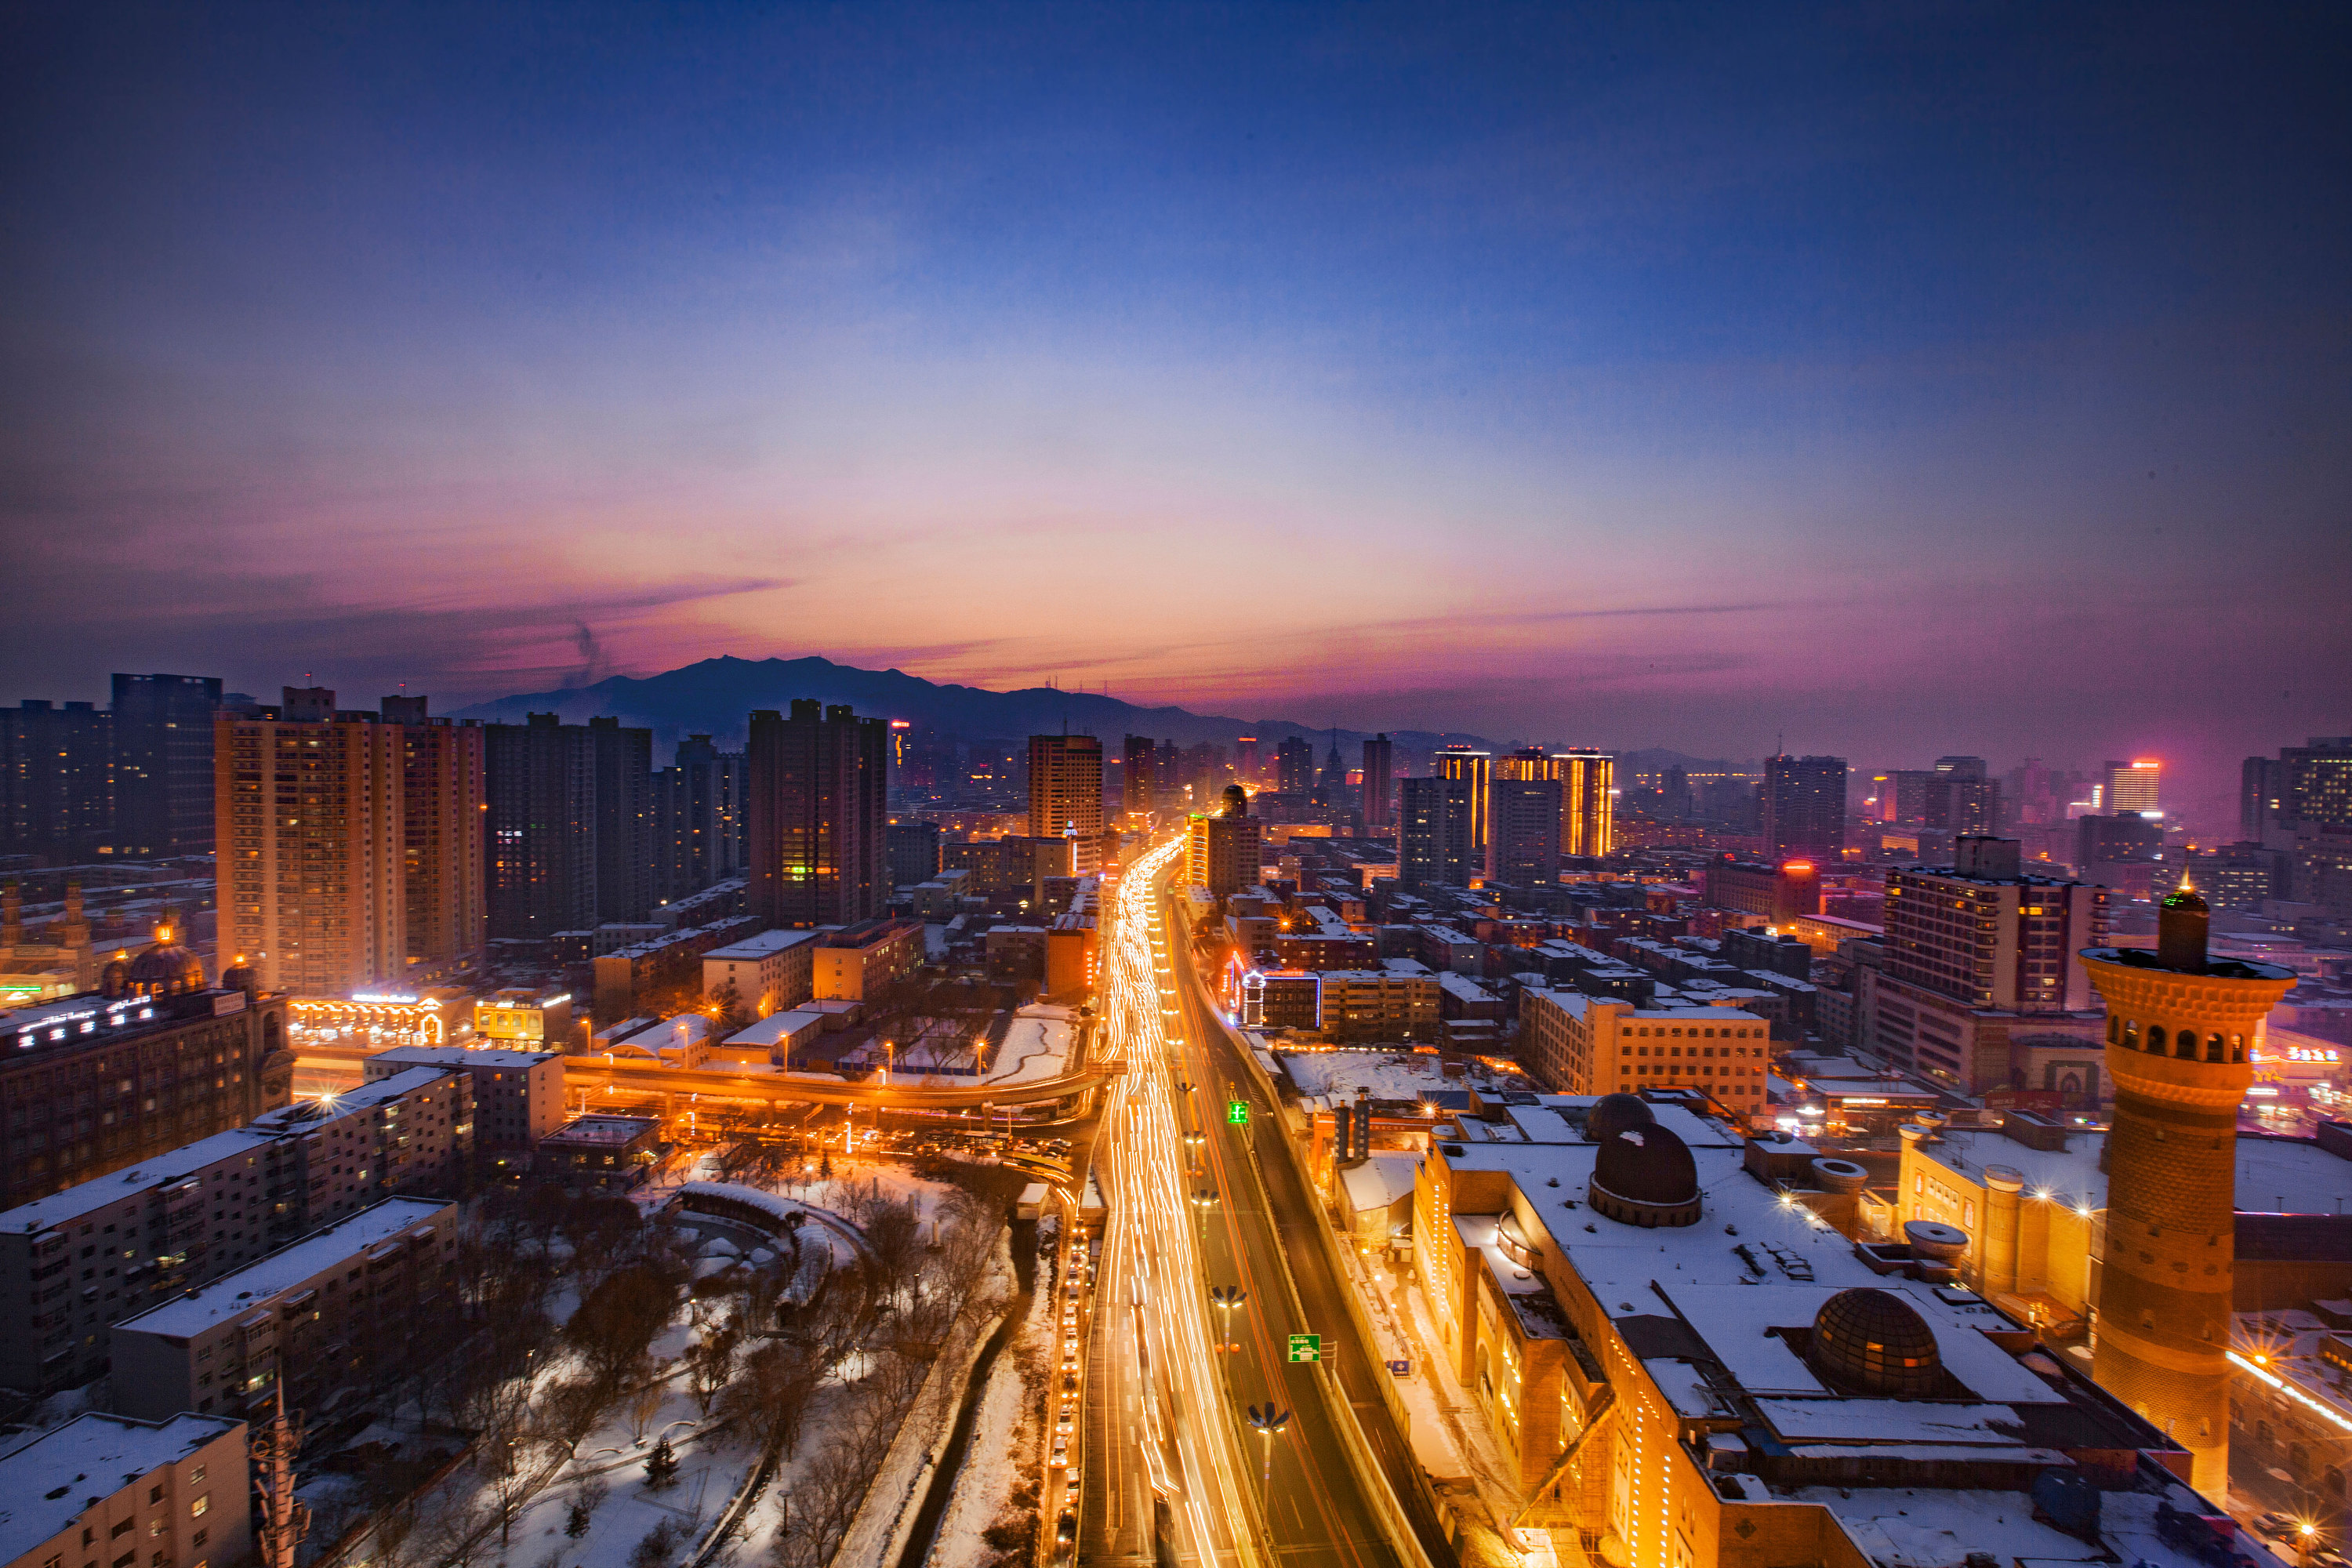 乌鲁木齐夜景 壁纸图片